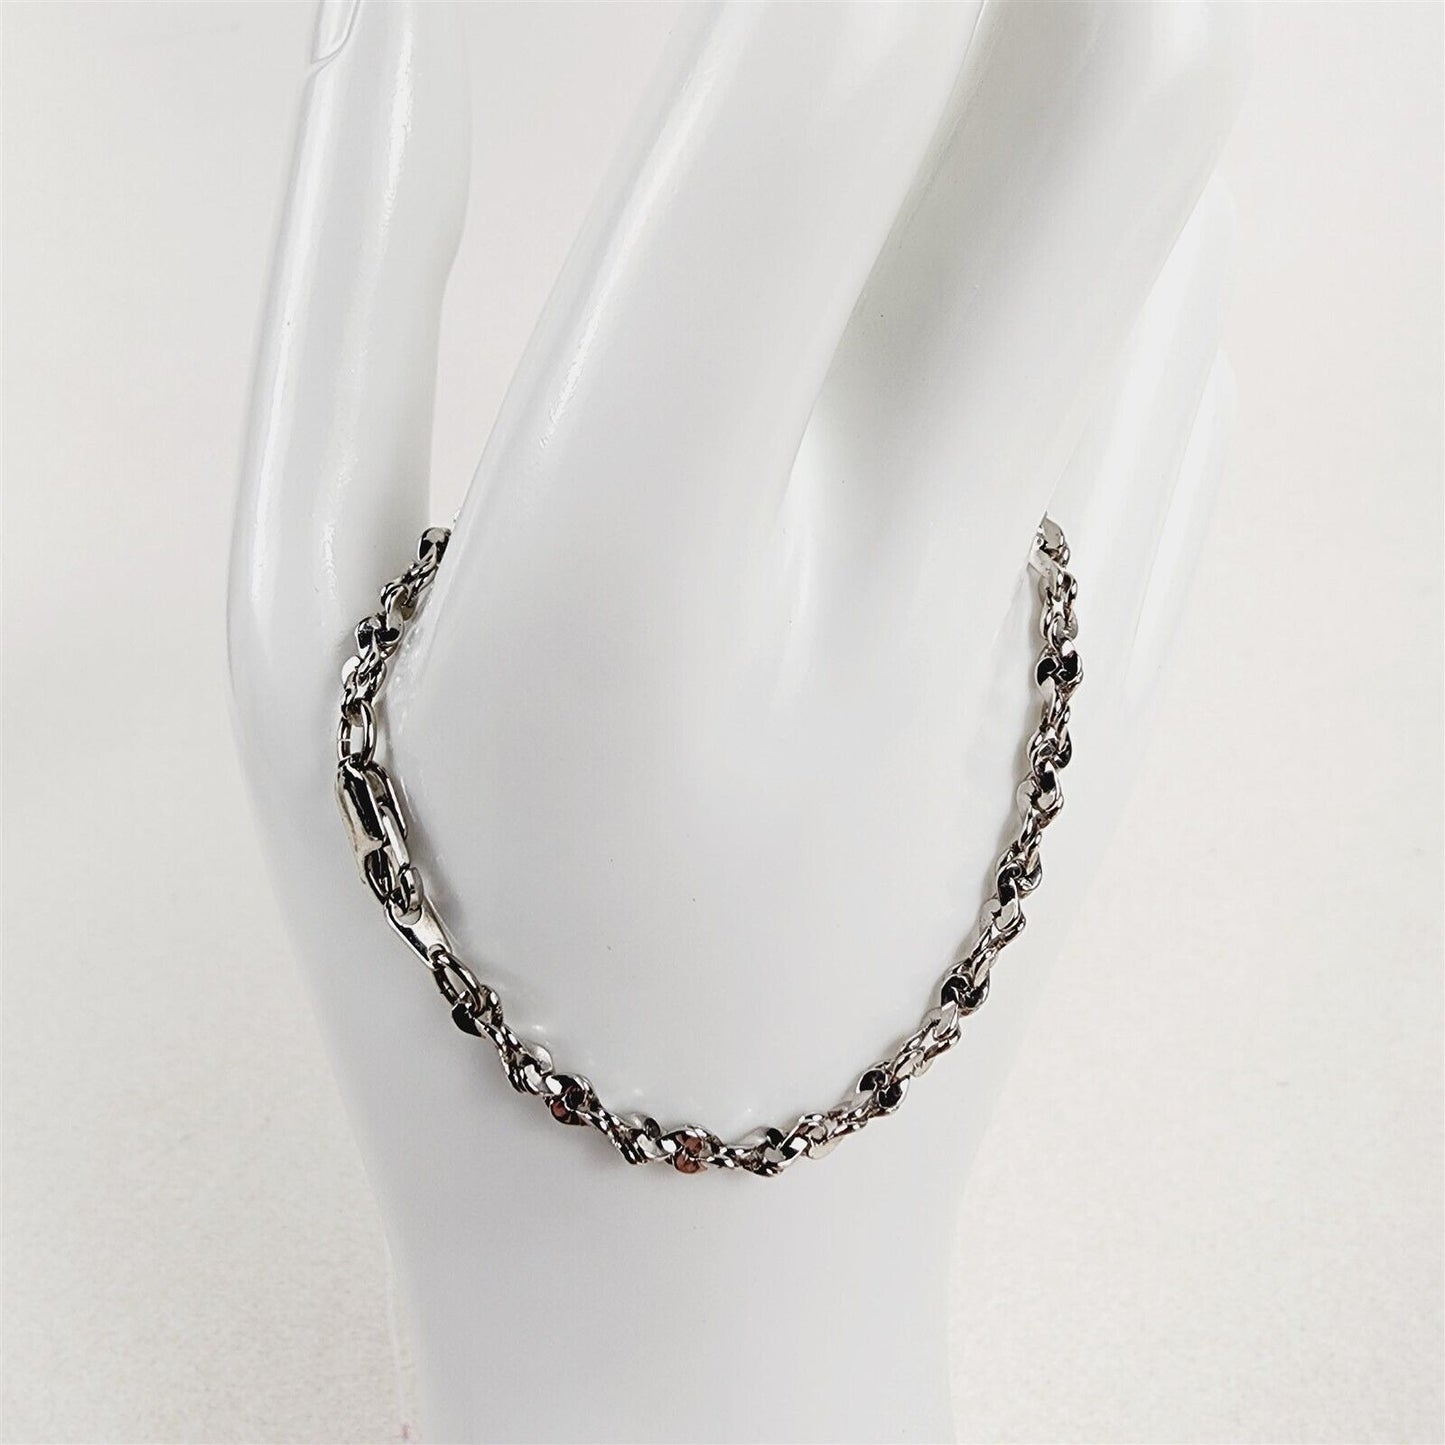 Rhodium Plated Bracelet Serpentine Twist 3.75mm Chain - 6 1/2"